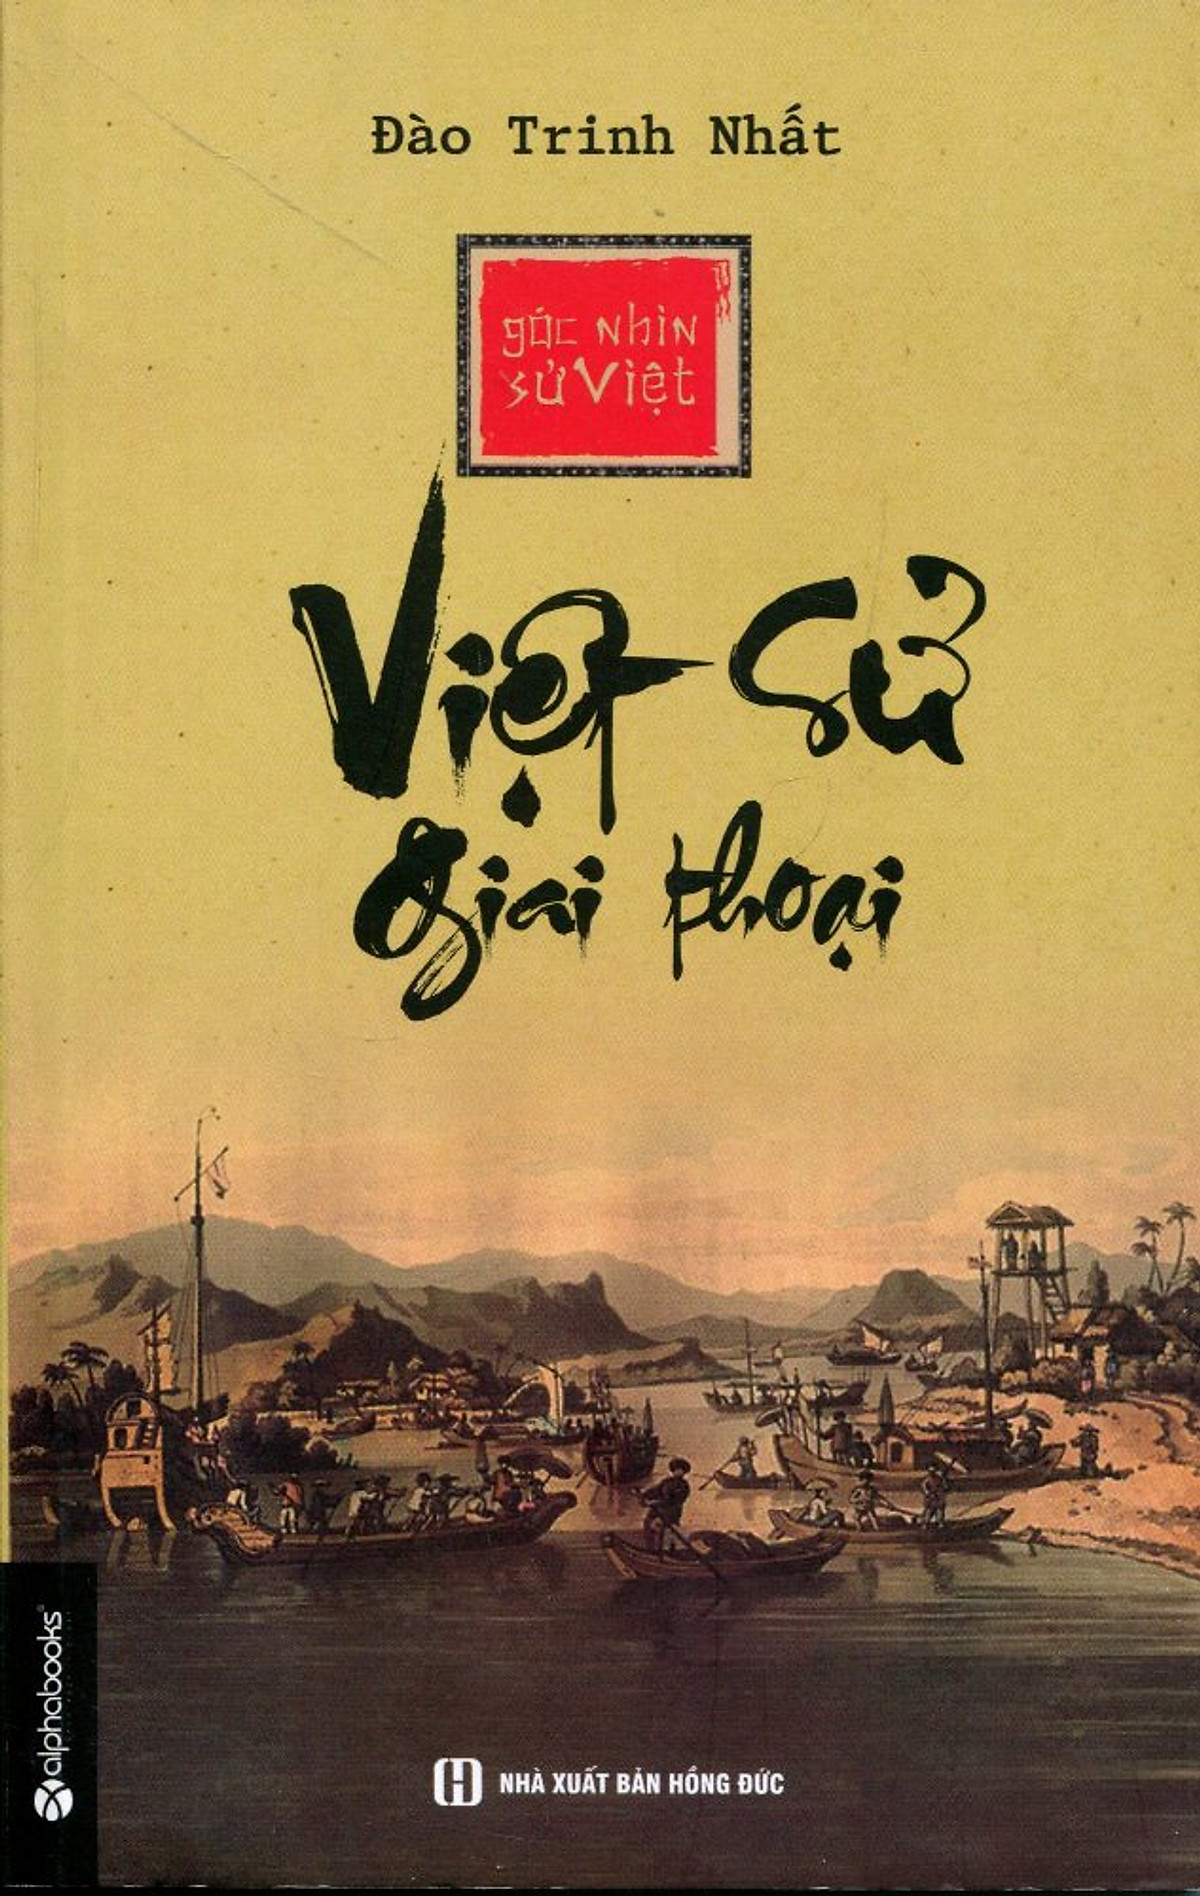 Góc Nhìn Sử Việt - Việt Sử Giai Thoại